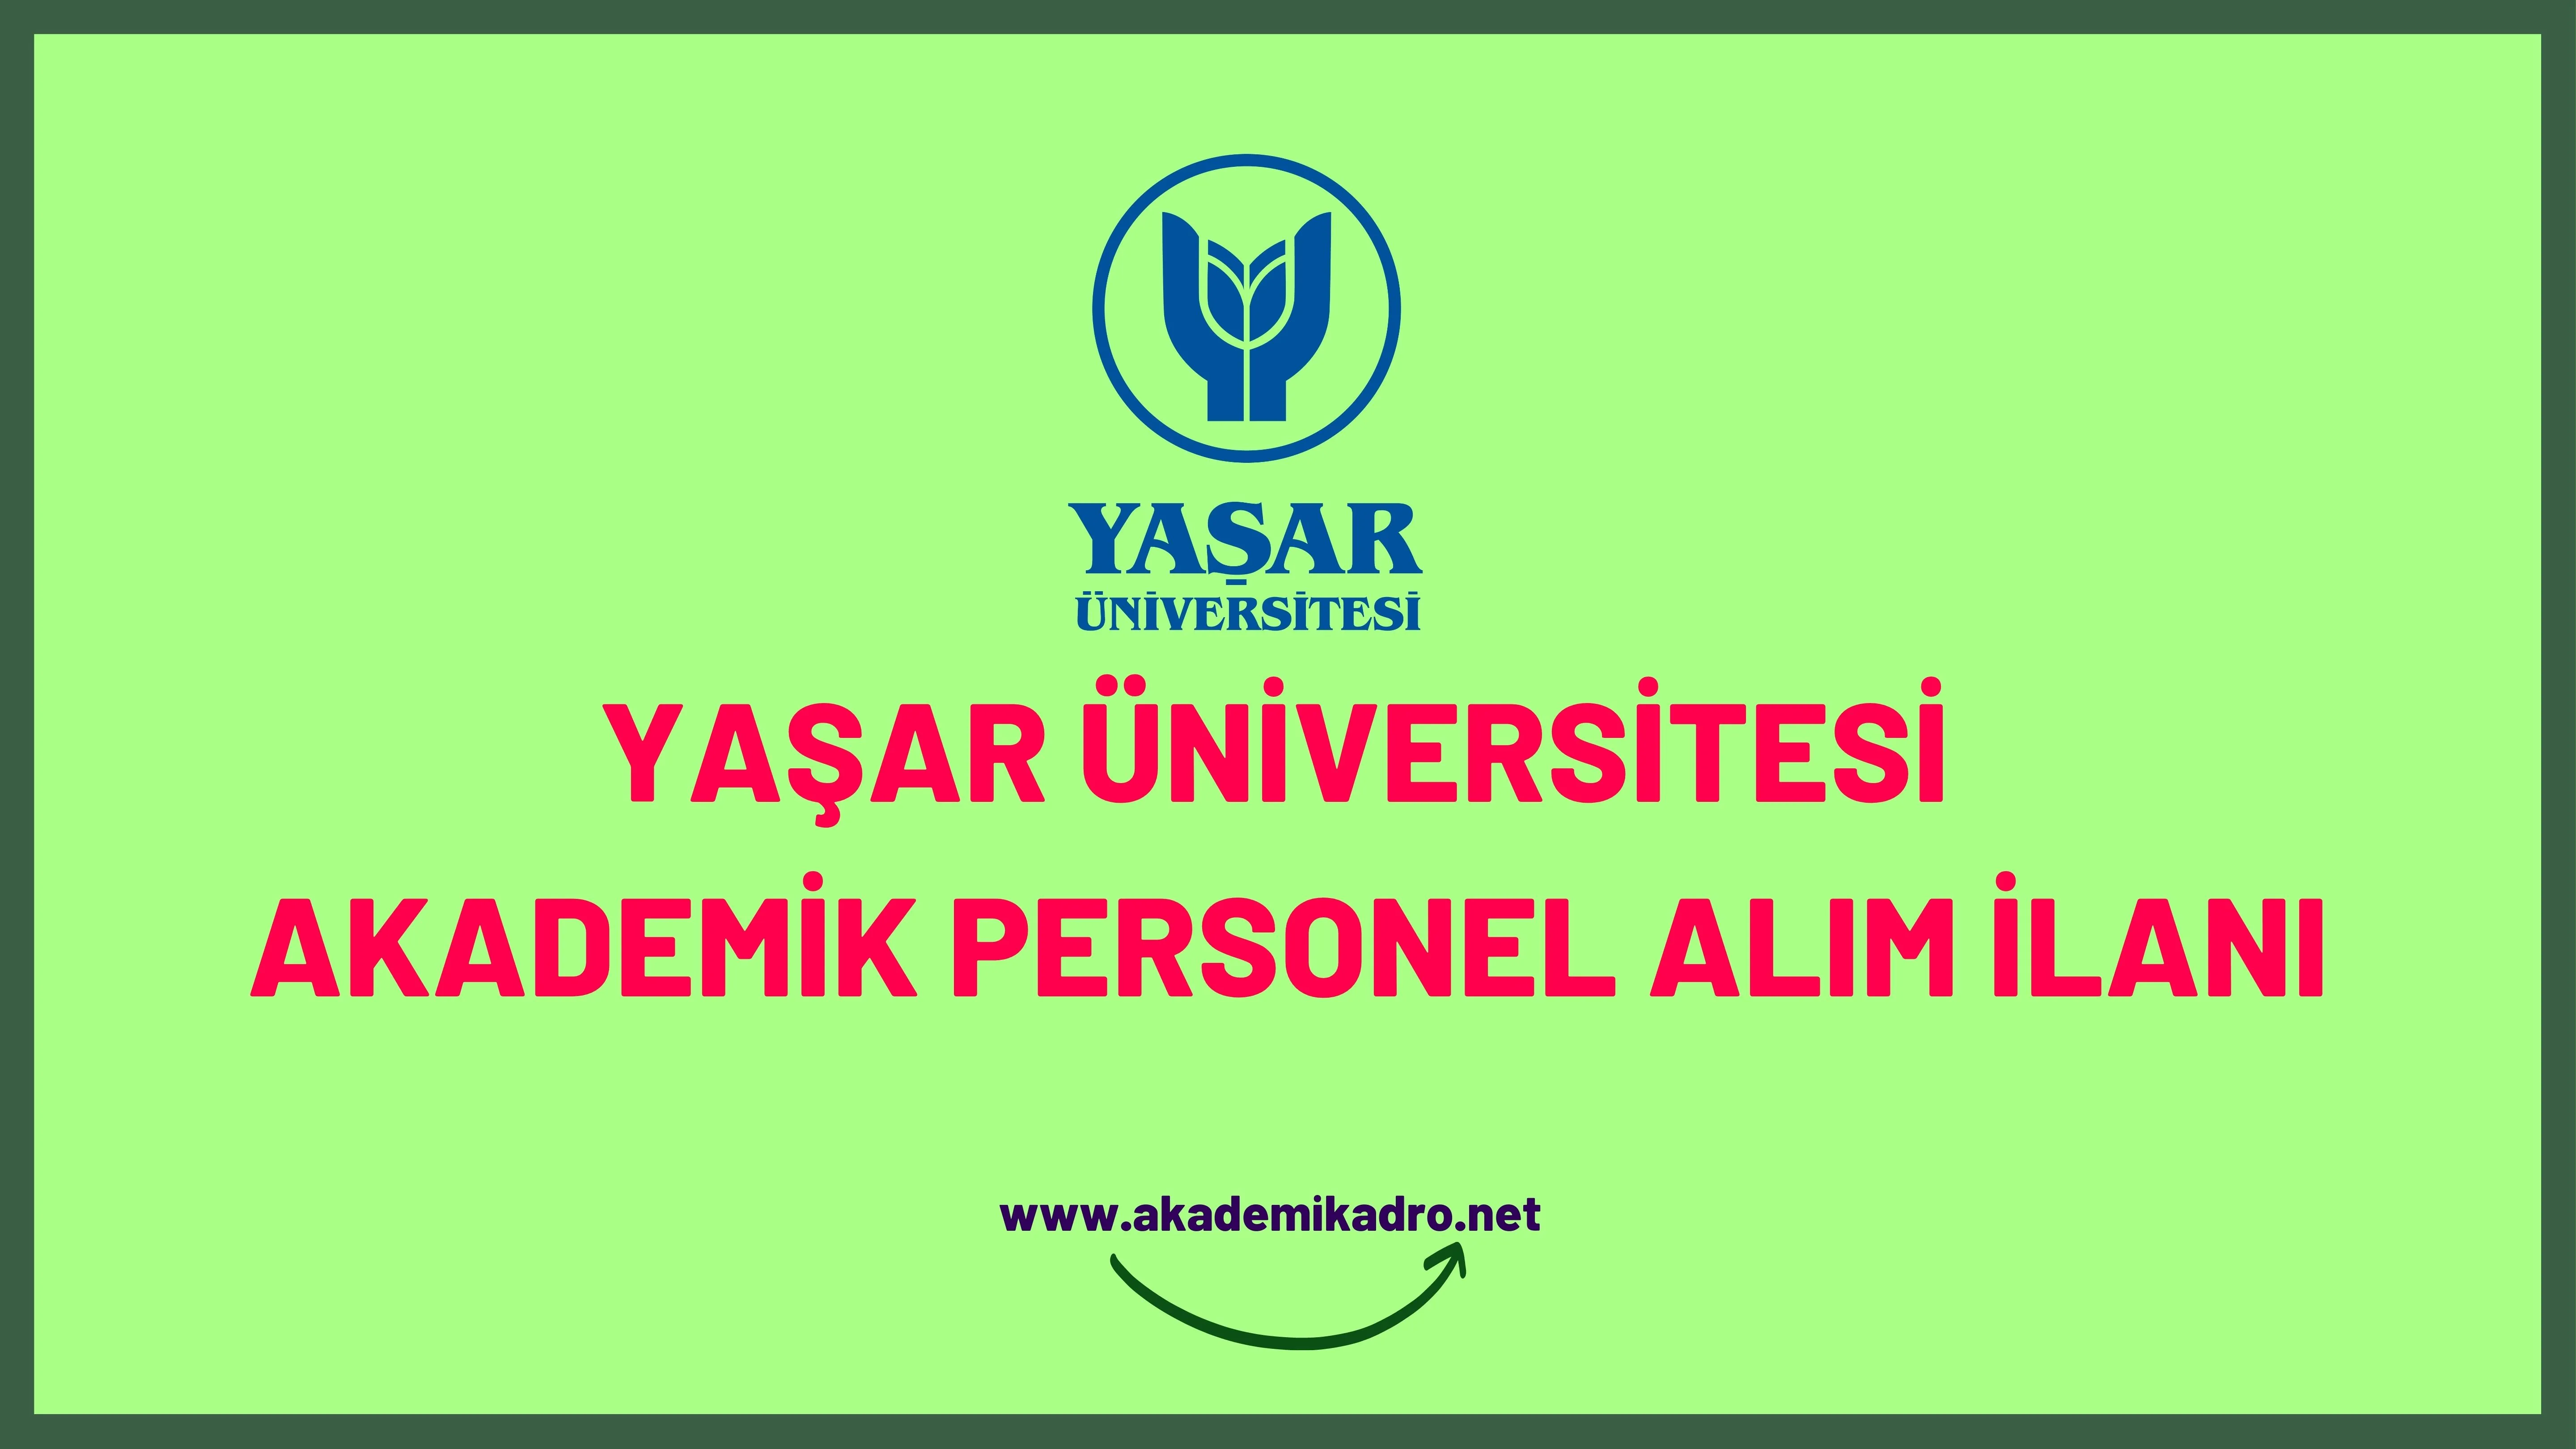 Yaşar Üniversitesi çeşitli alanlardan 8 akademik personel alacak.